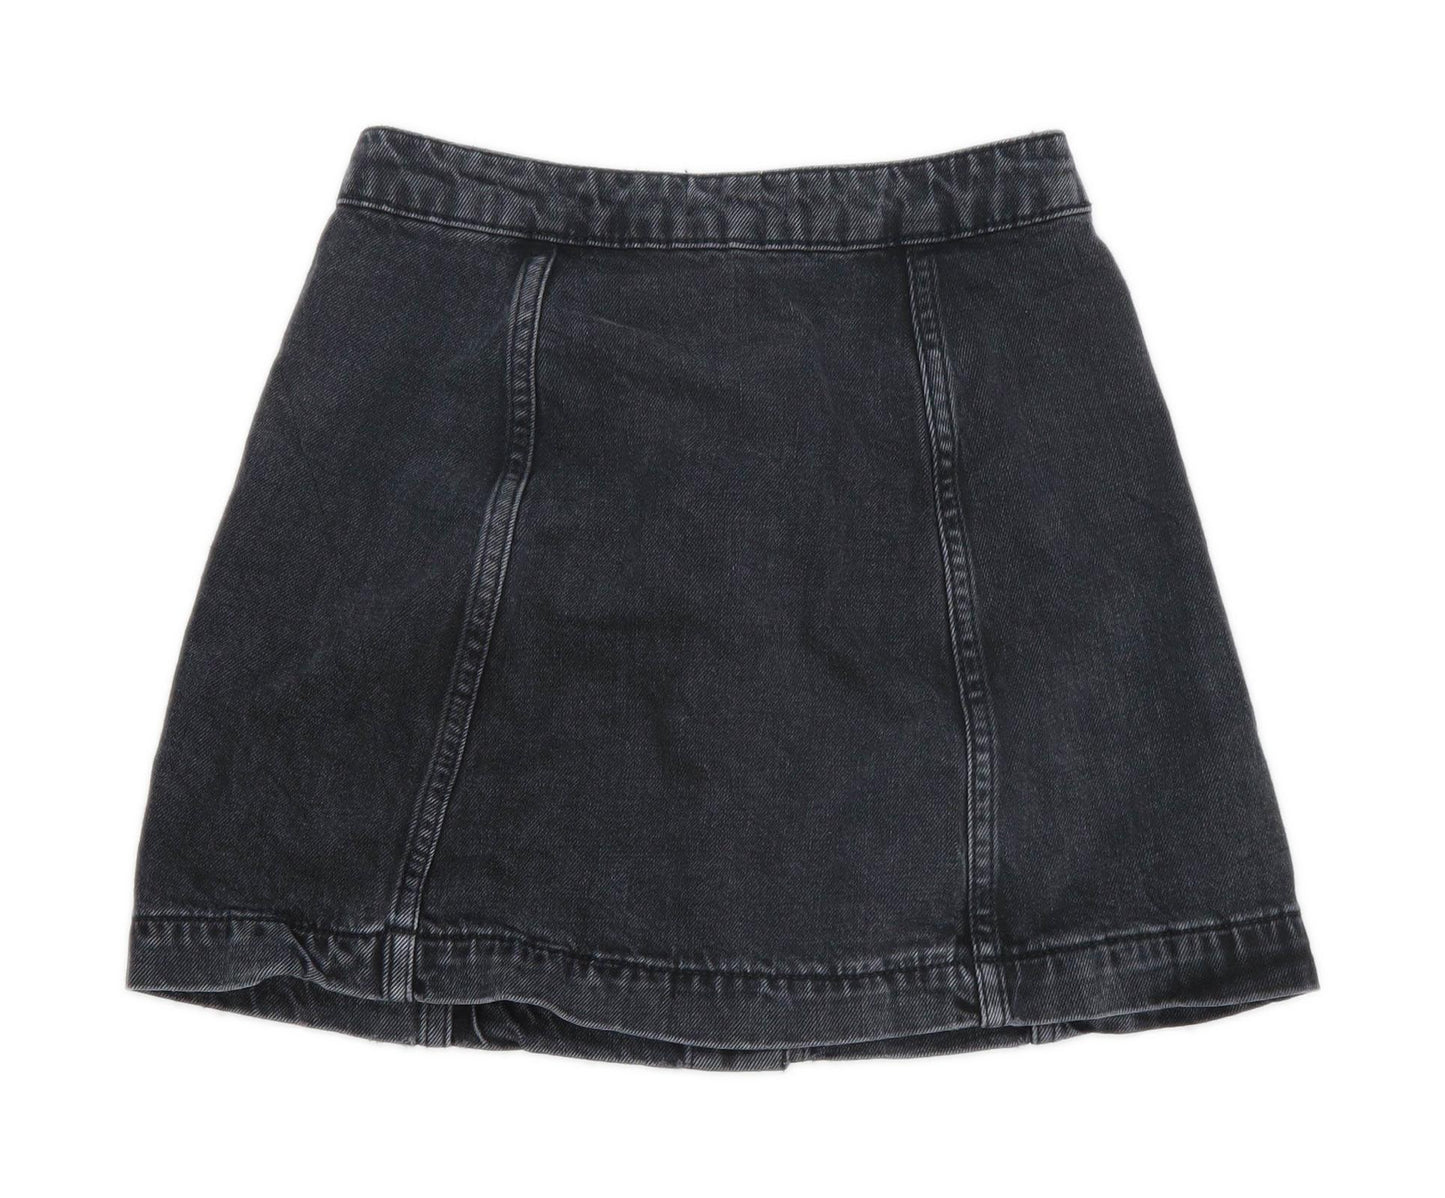 Topshop Womens Size 4 Denim Black A-Line Skirt (Regular)